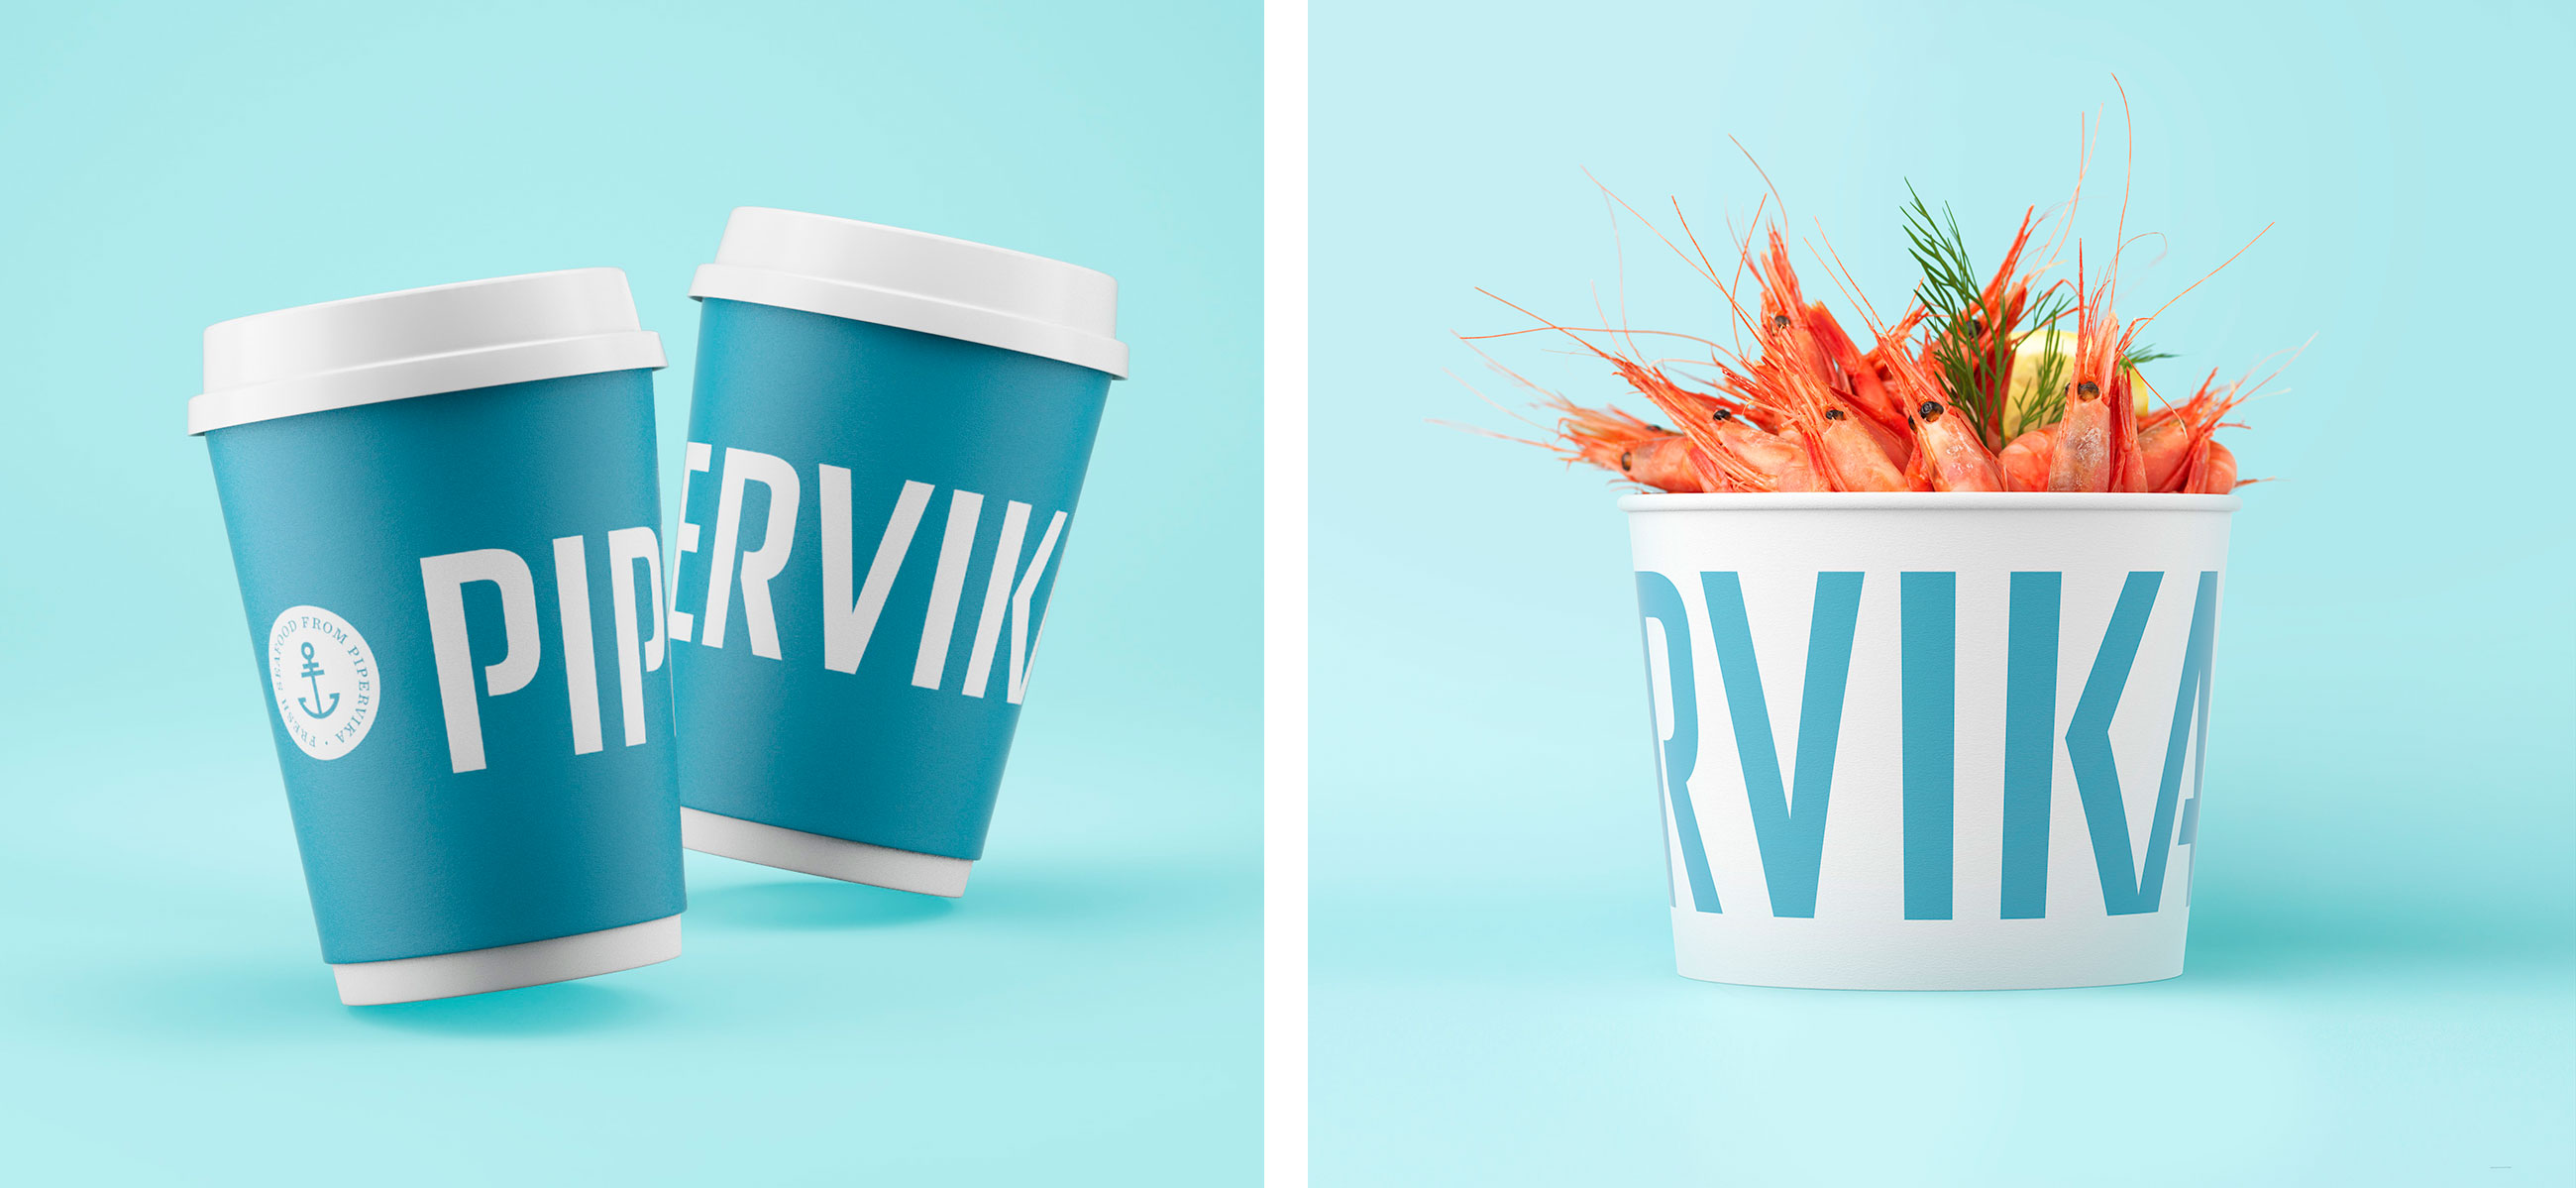 Pipervika seafood restaurant sjømat restaurant beger box kopp cup. Visuell identitet visual identity.